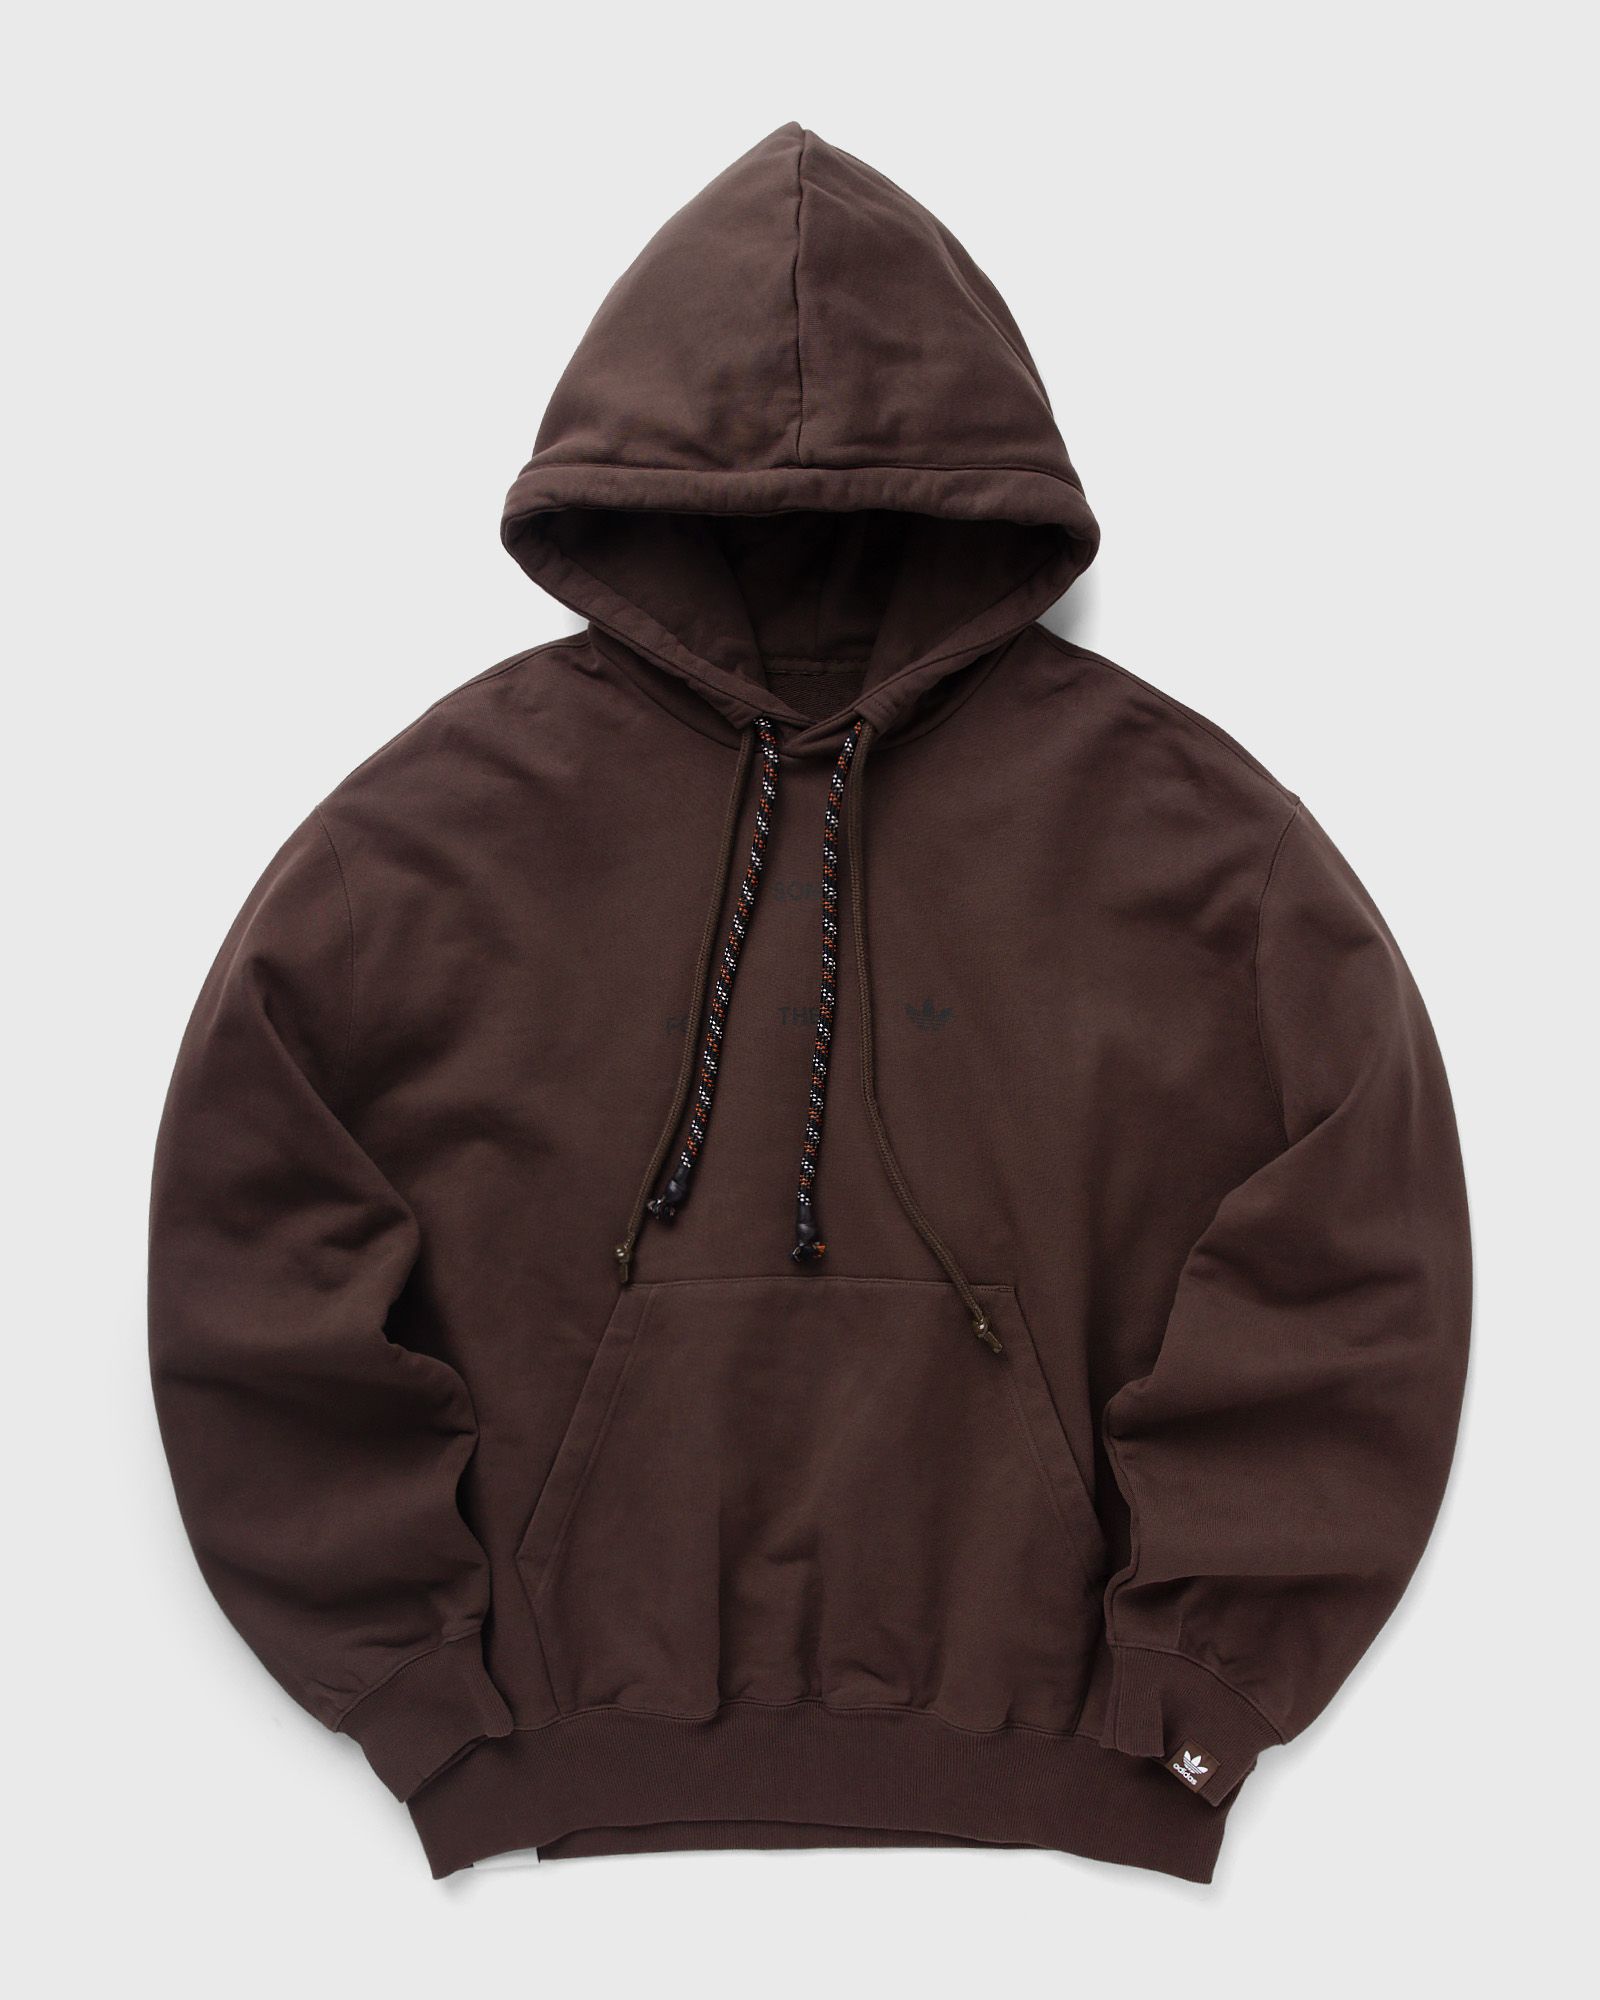 Adidas - x song for the mute hoody men hoodies brown in größe:l